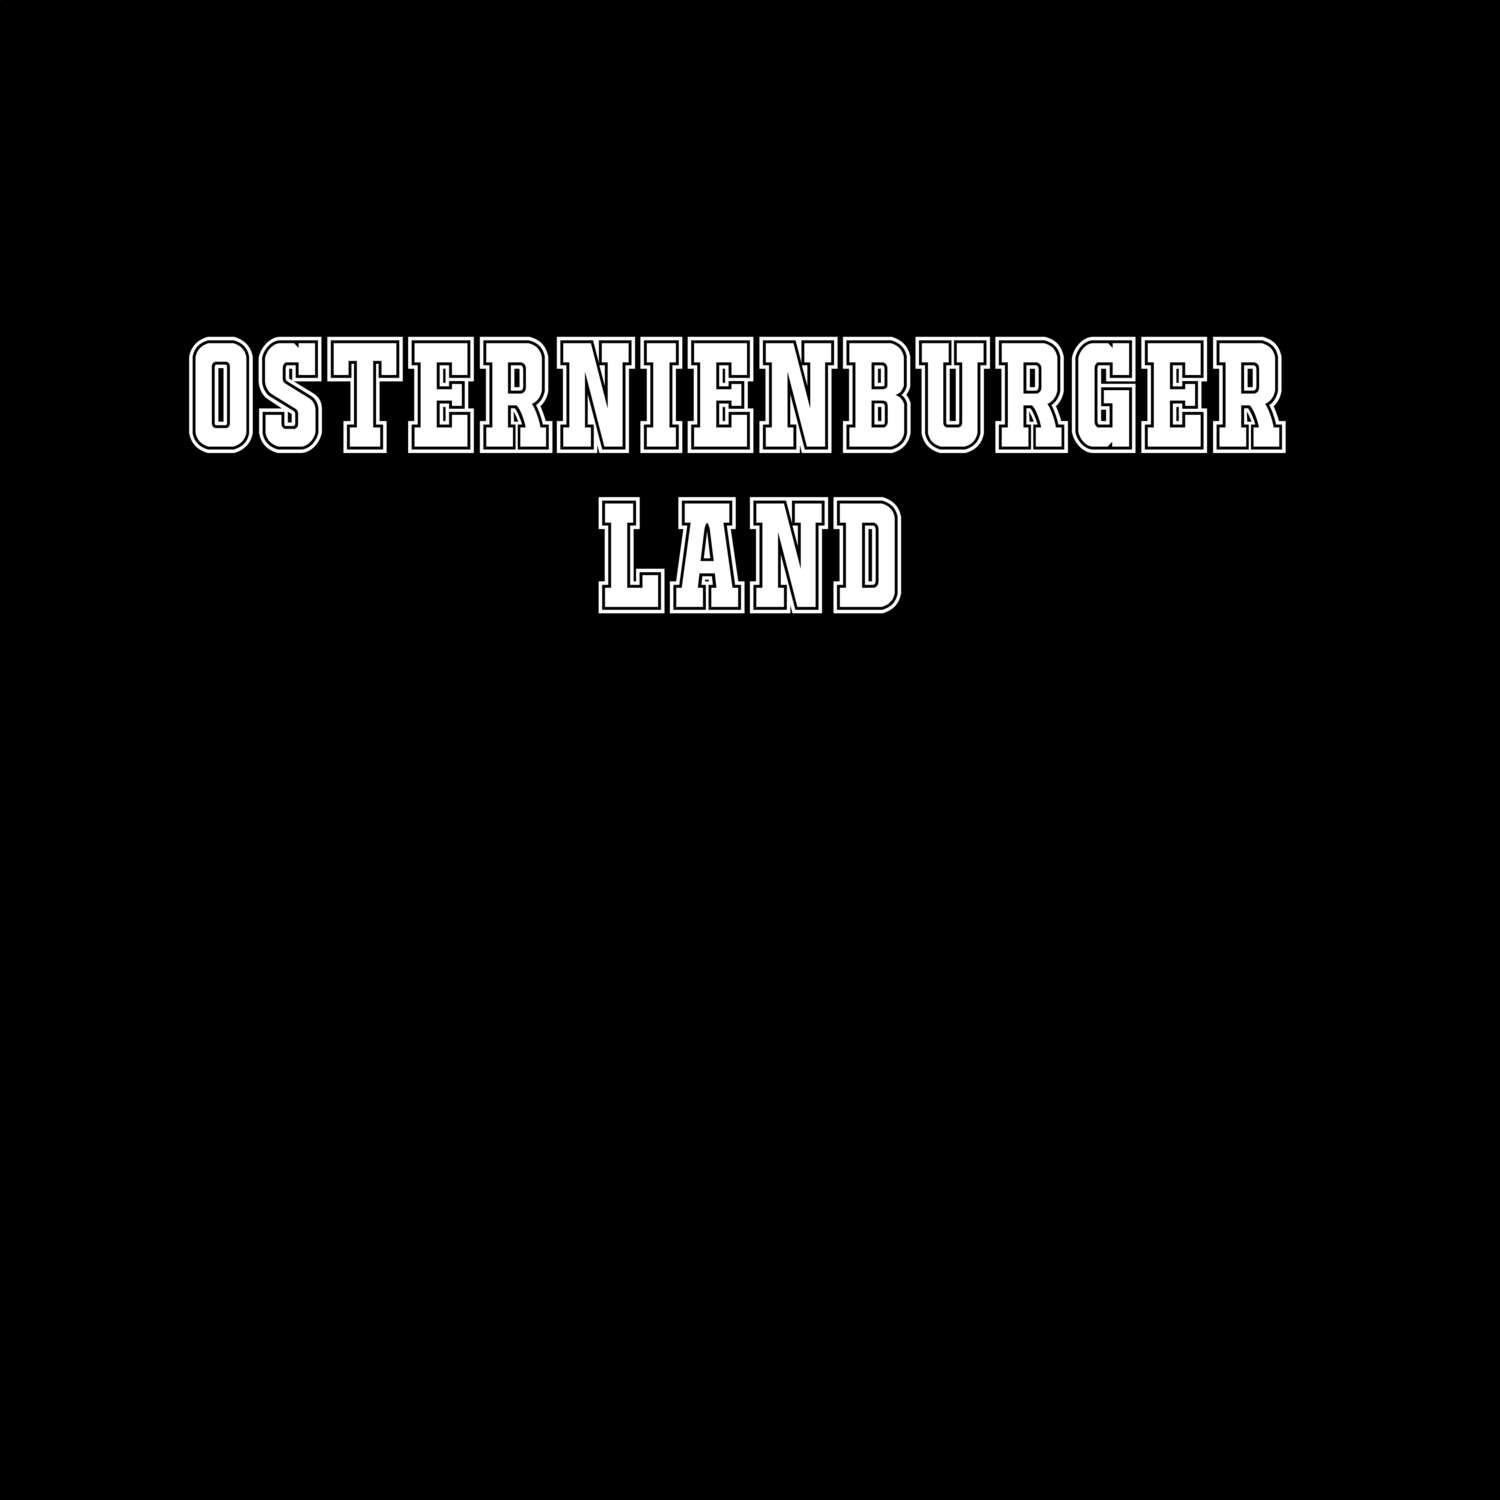 Osternienburger Land T-Shirt »Classic«